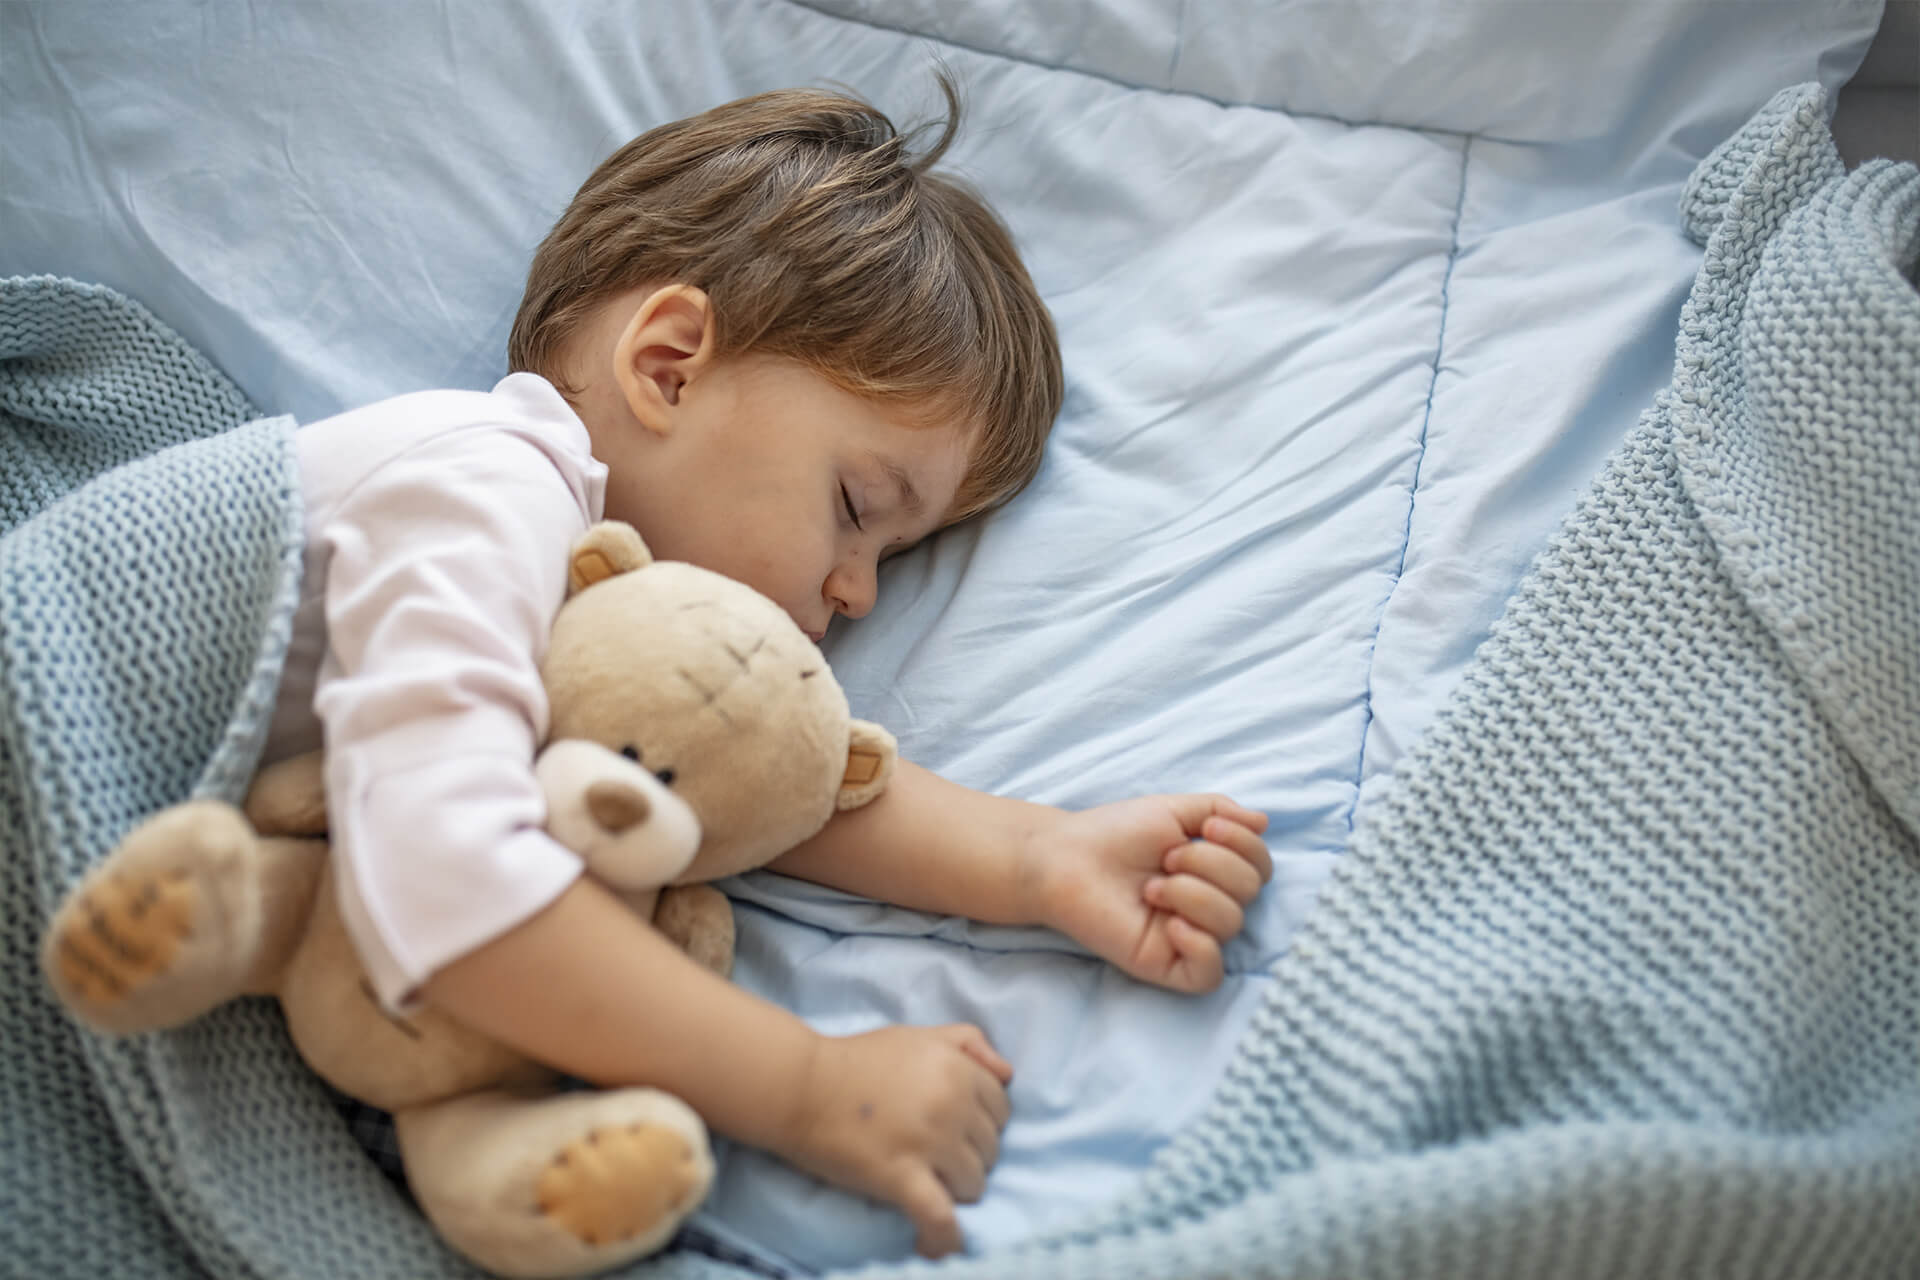 Kleines Kind liegt Schlafen in einem blau bezogenen Bett. Dabei kuschelt das Kind mit einem beigefarbenen Teddy im Arm.